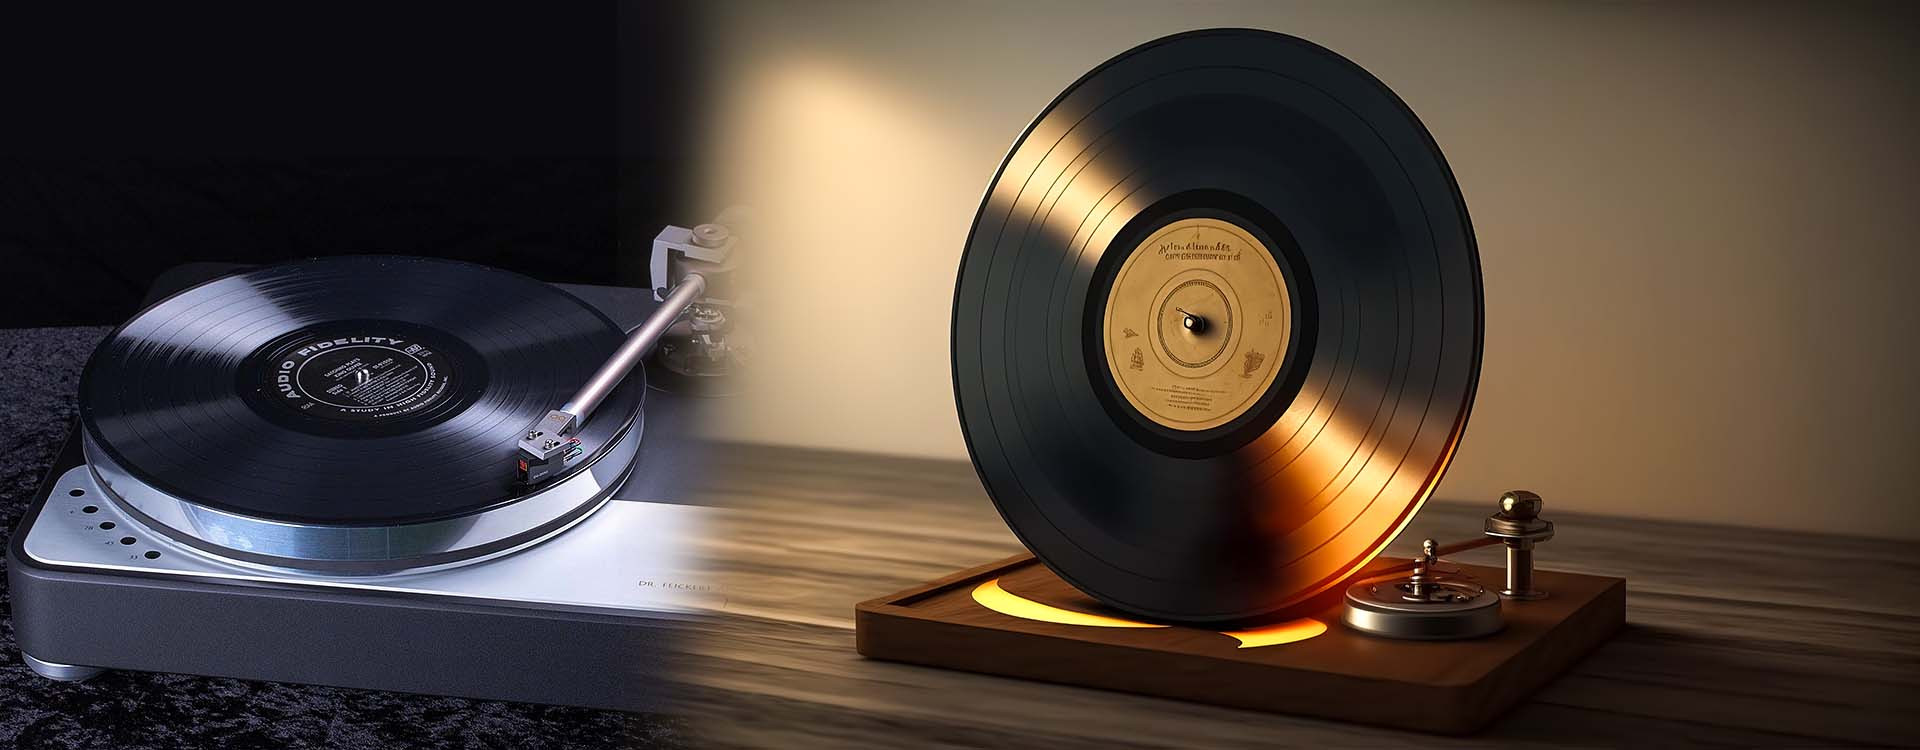 Comment nettoyer ses disques vinyles : 3 solutions efficaces